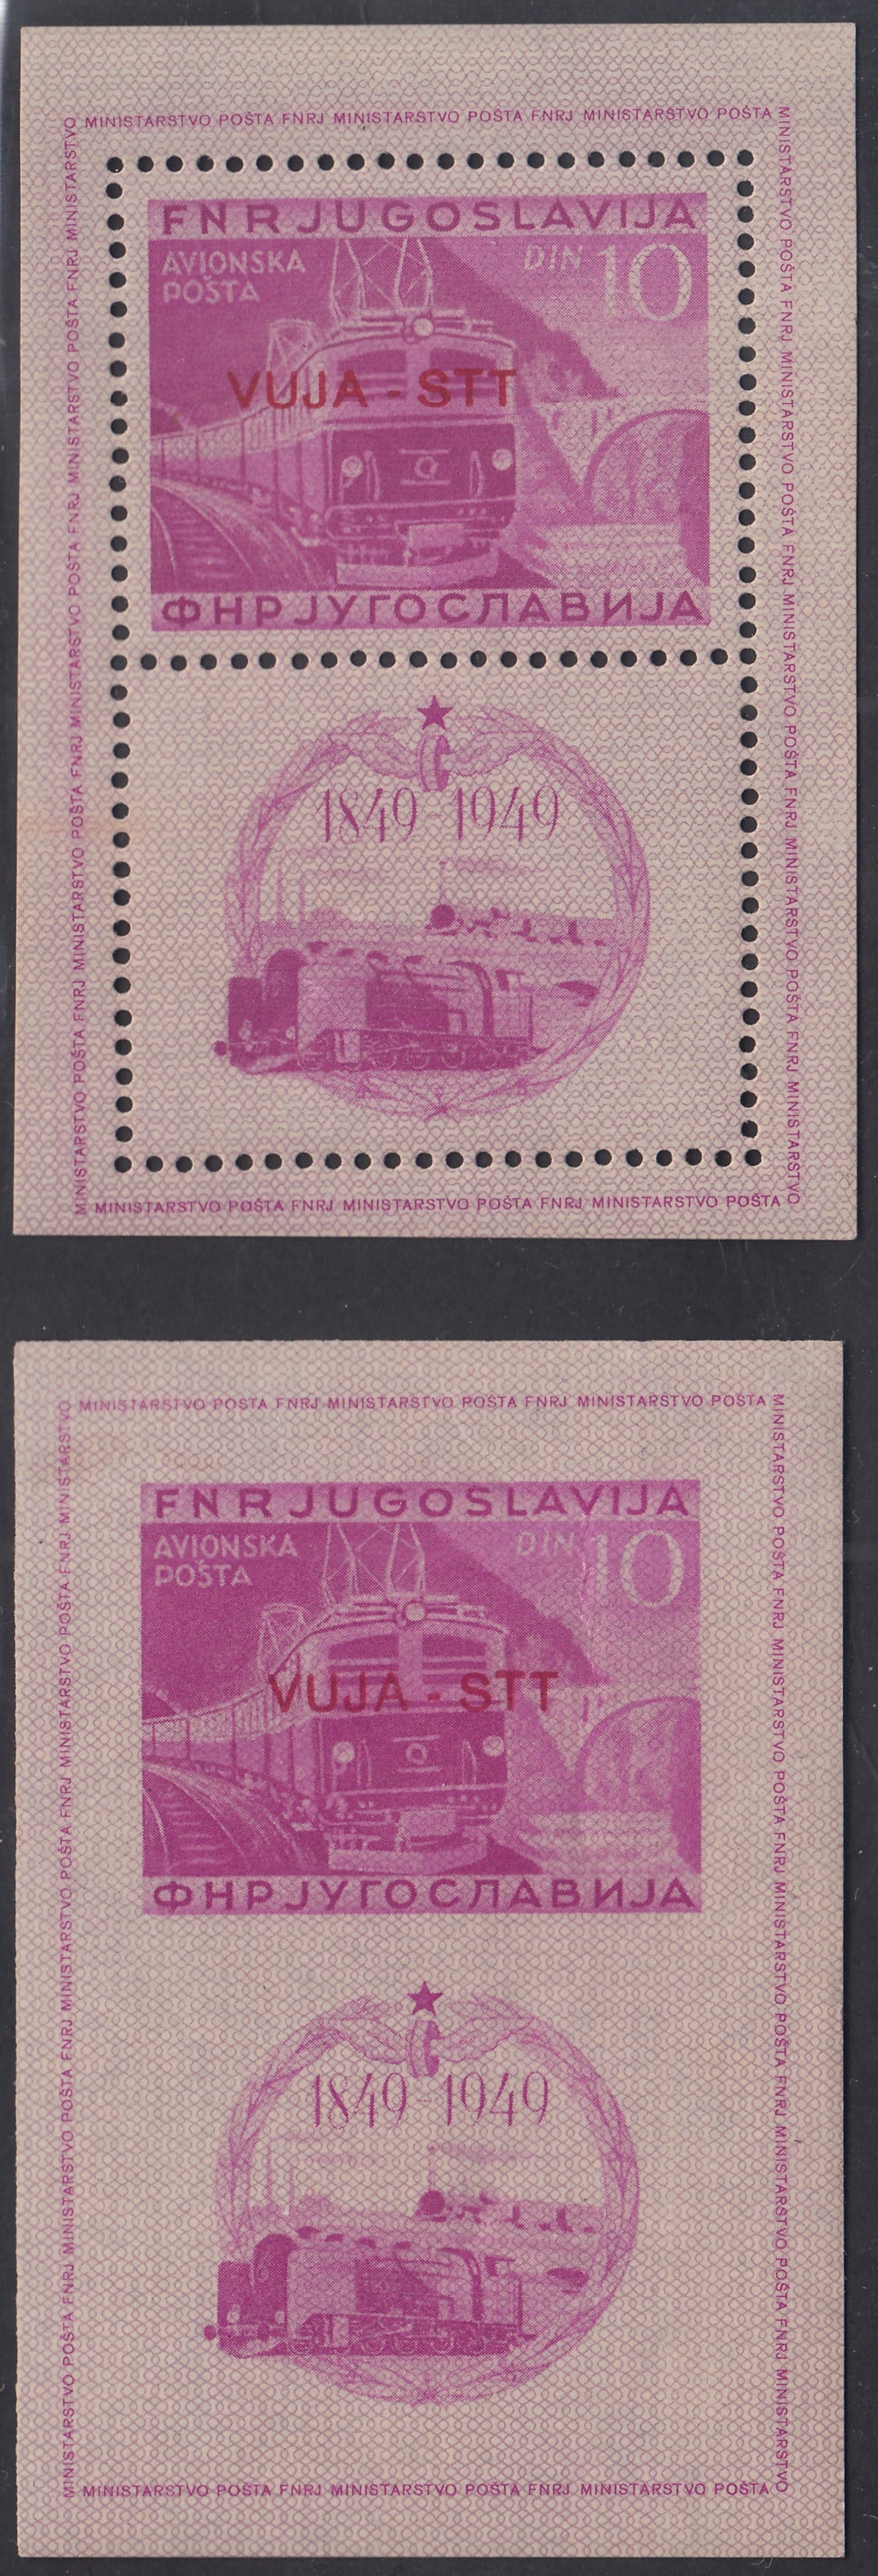 1950 - Foglietti, centenario delle ferrovie Jugoslave, esemplare dentellato e non dentellato. (F1, 2)